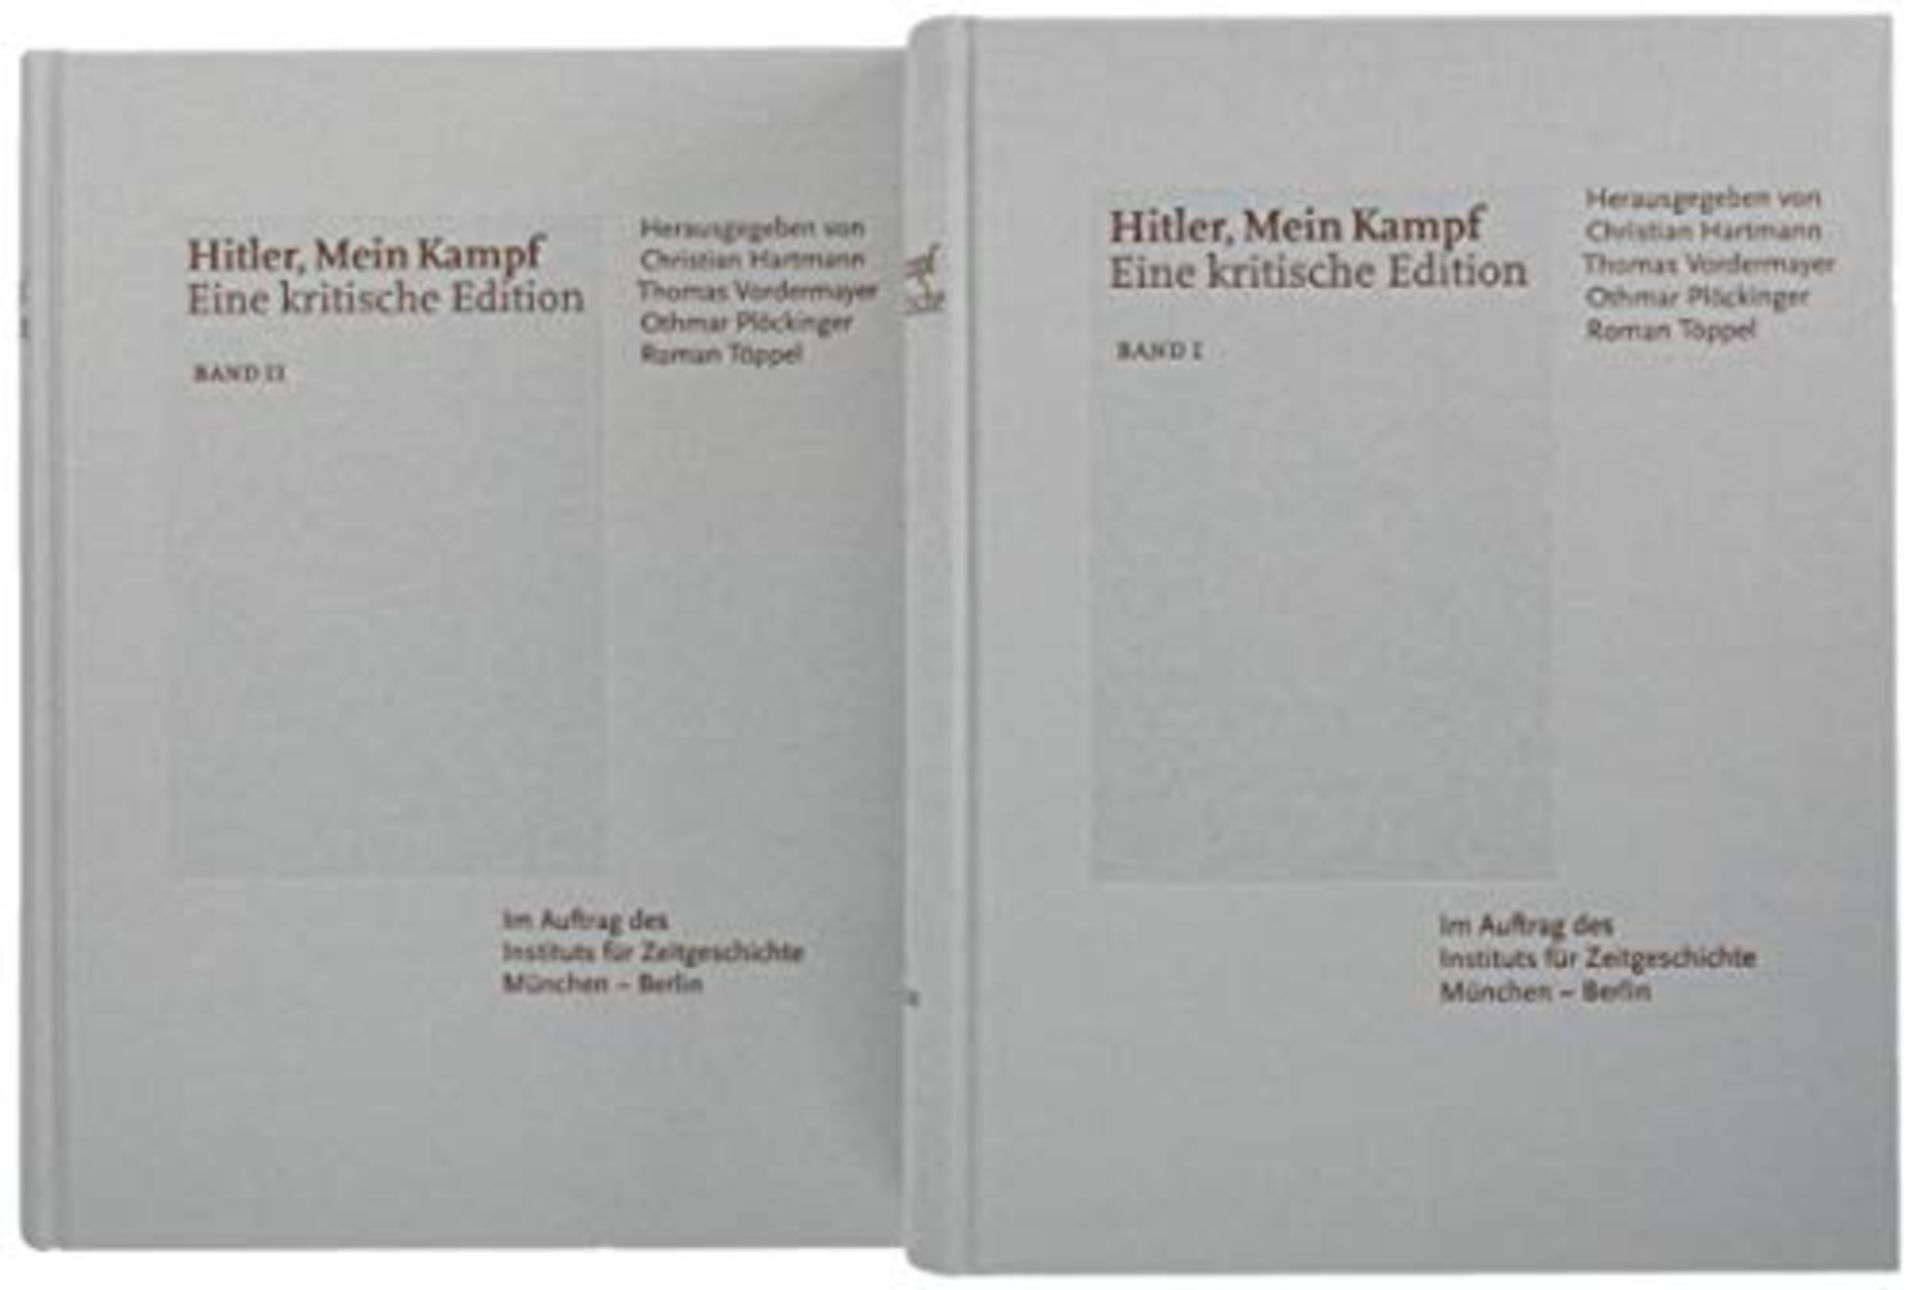 Hitler, Mein Kampf. Eine kritische Edition. Band 1 und 2.